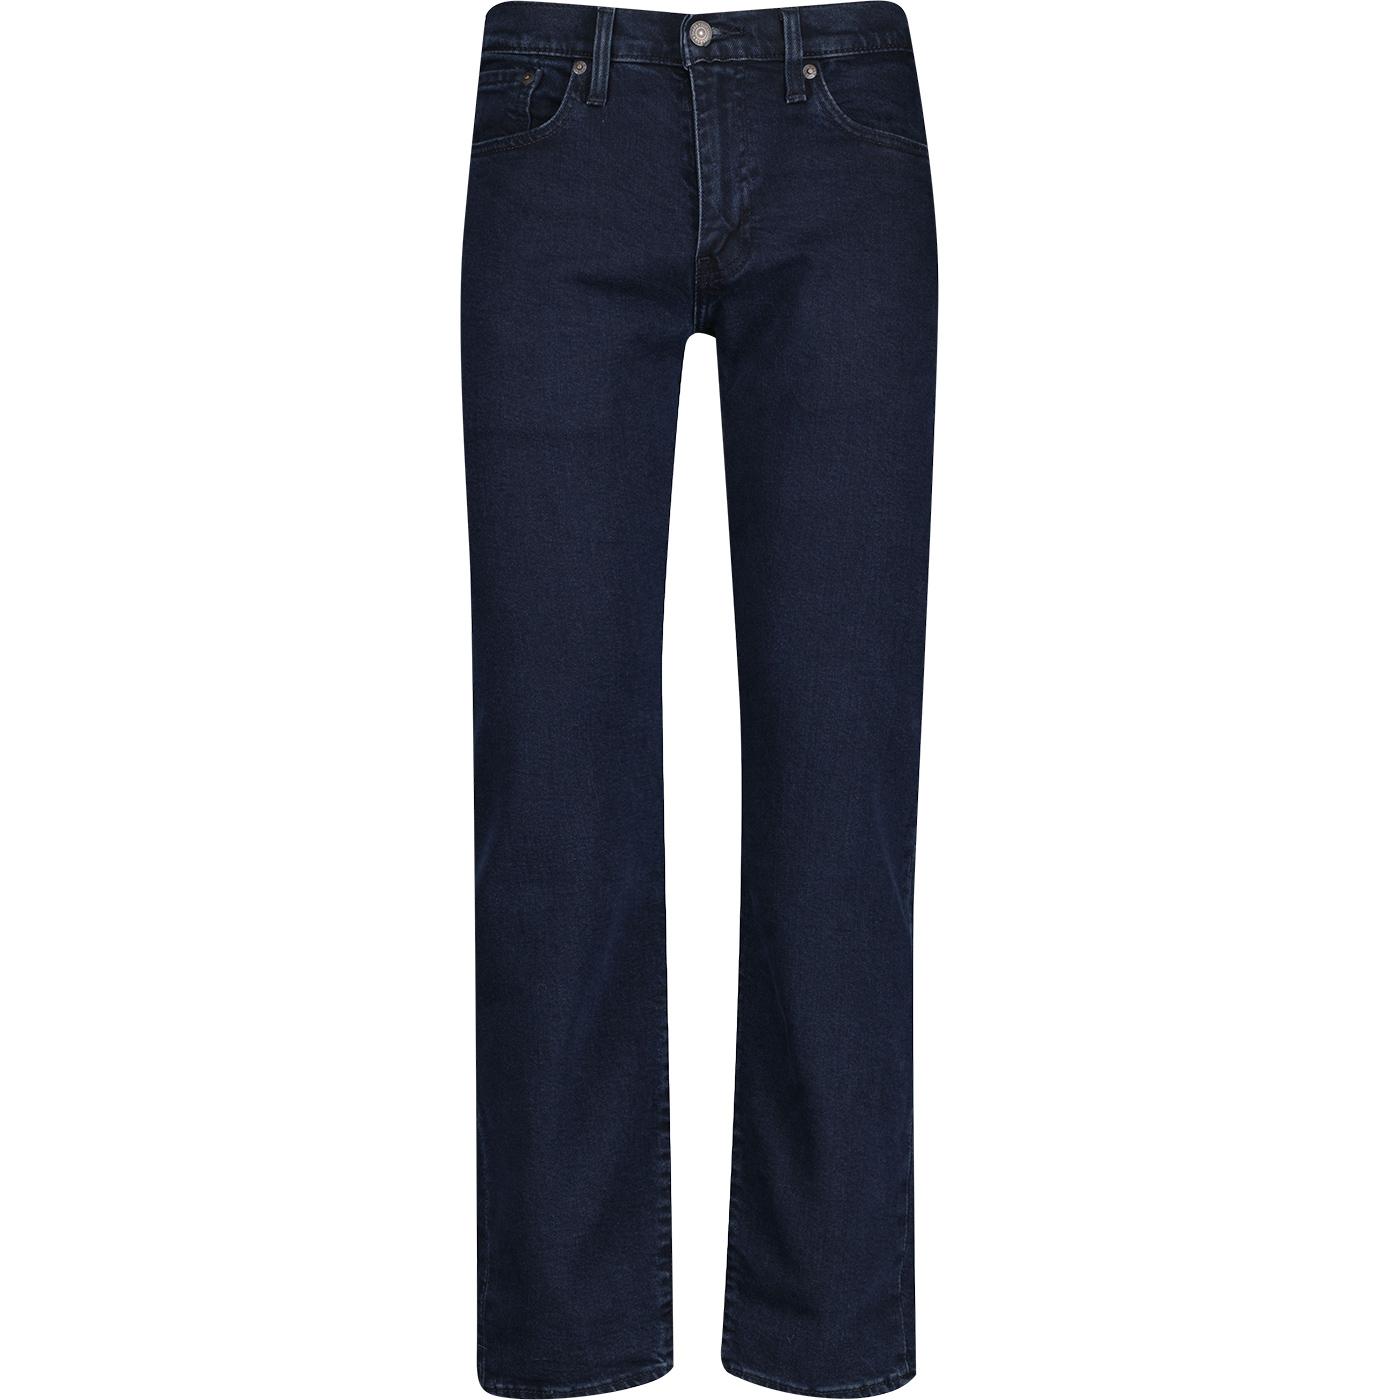 Levi's® 502™ Retro Taper Jeans (Indigo Soaker Adv)